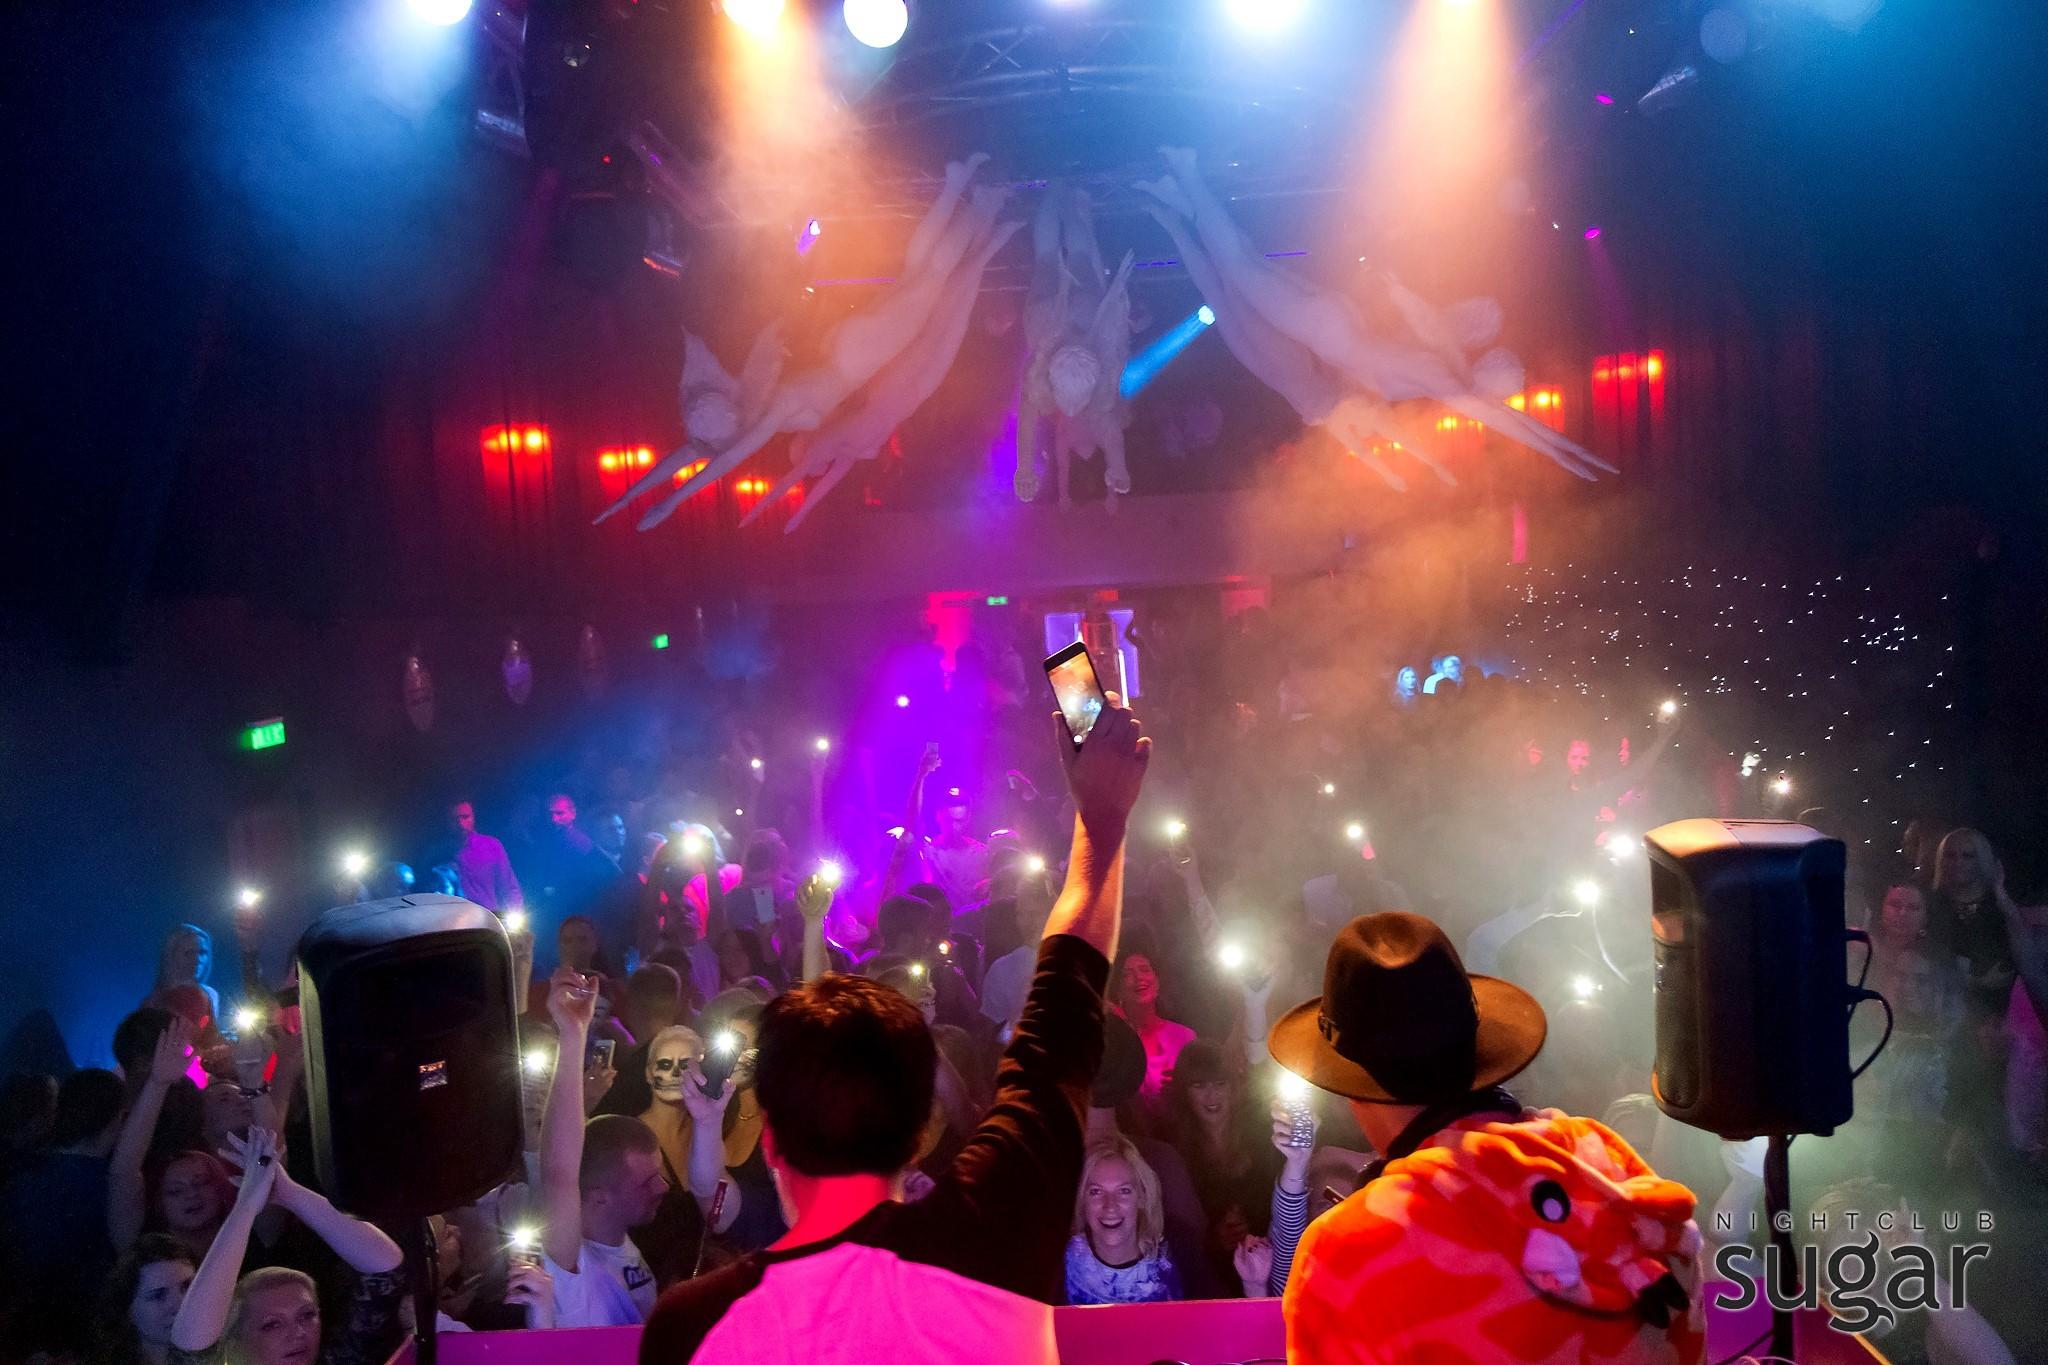 Best parties in Pärnu are held at the Nightclub Sugar